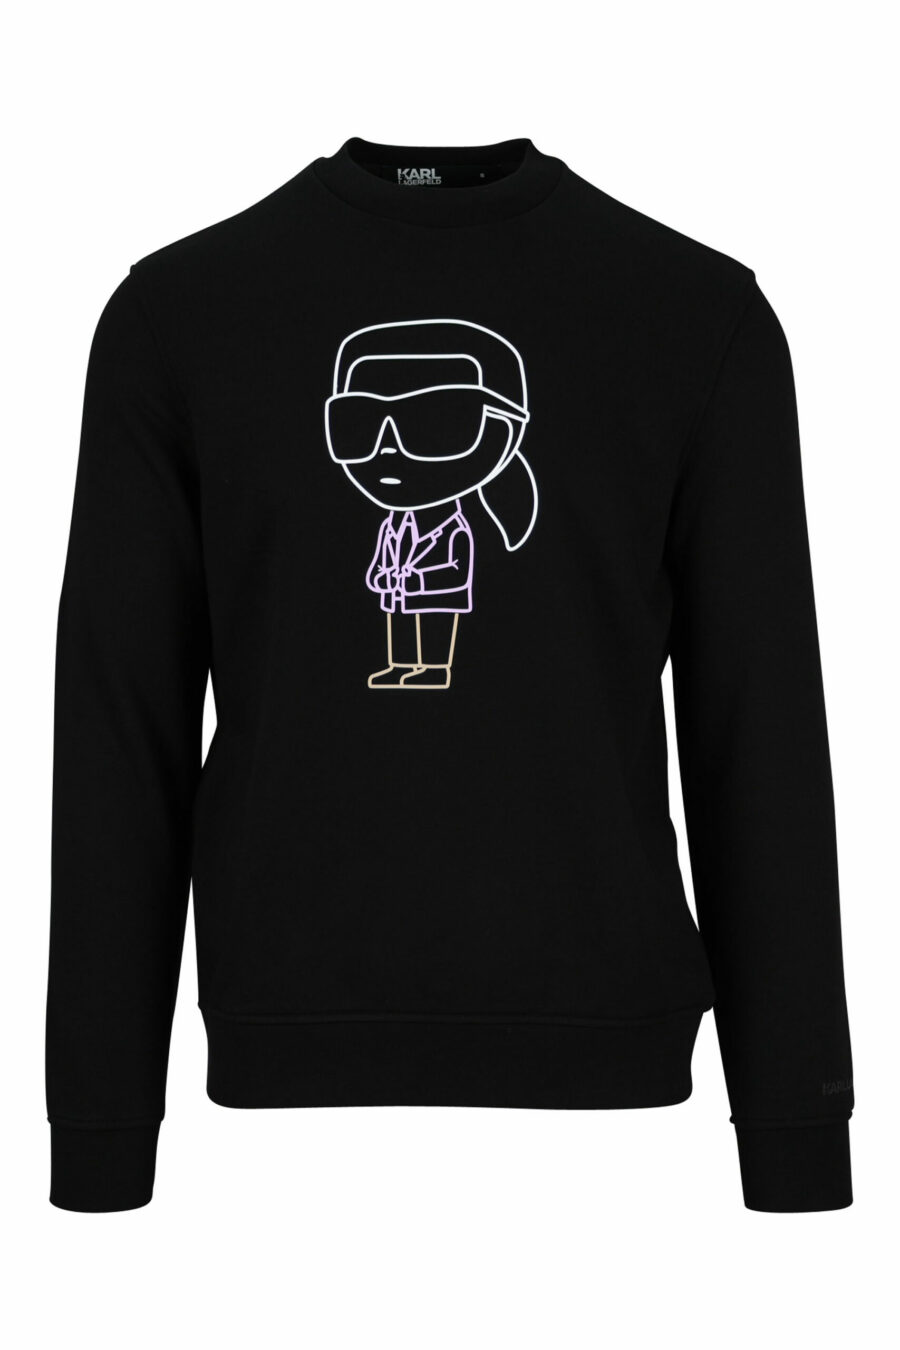 Schwarzes Sweatshirt mit mehrfarbigem "karl silhouette" Maxilogo - 4062226392938 skaliert